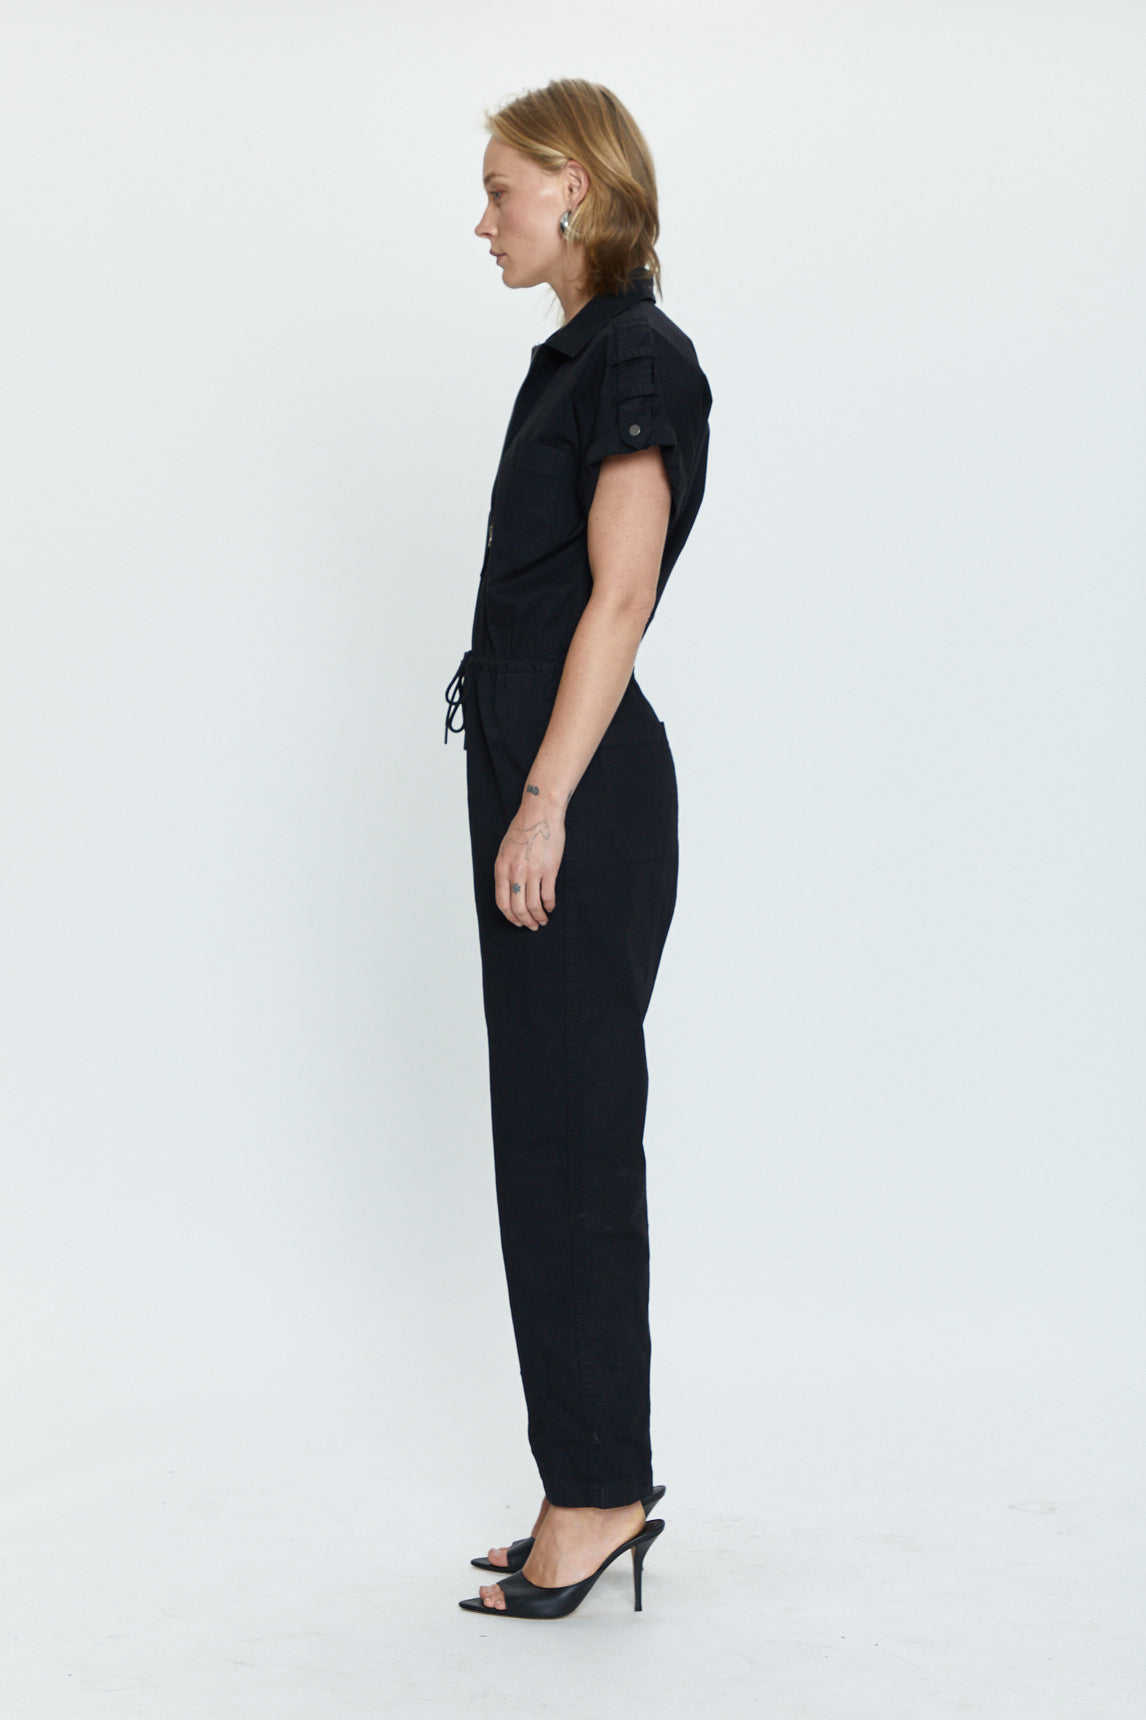 Jordan Short Sleeve Zip Front Jumpsuit - Fade to Black